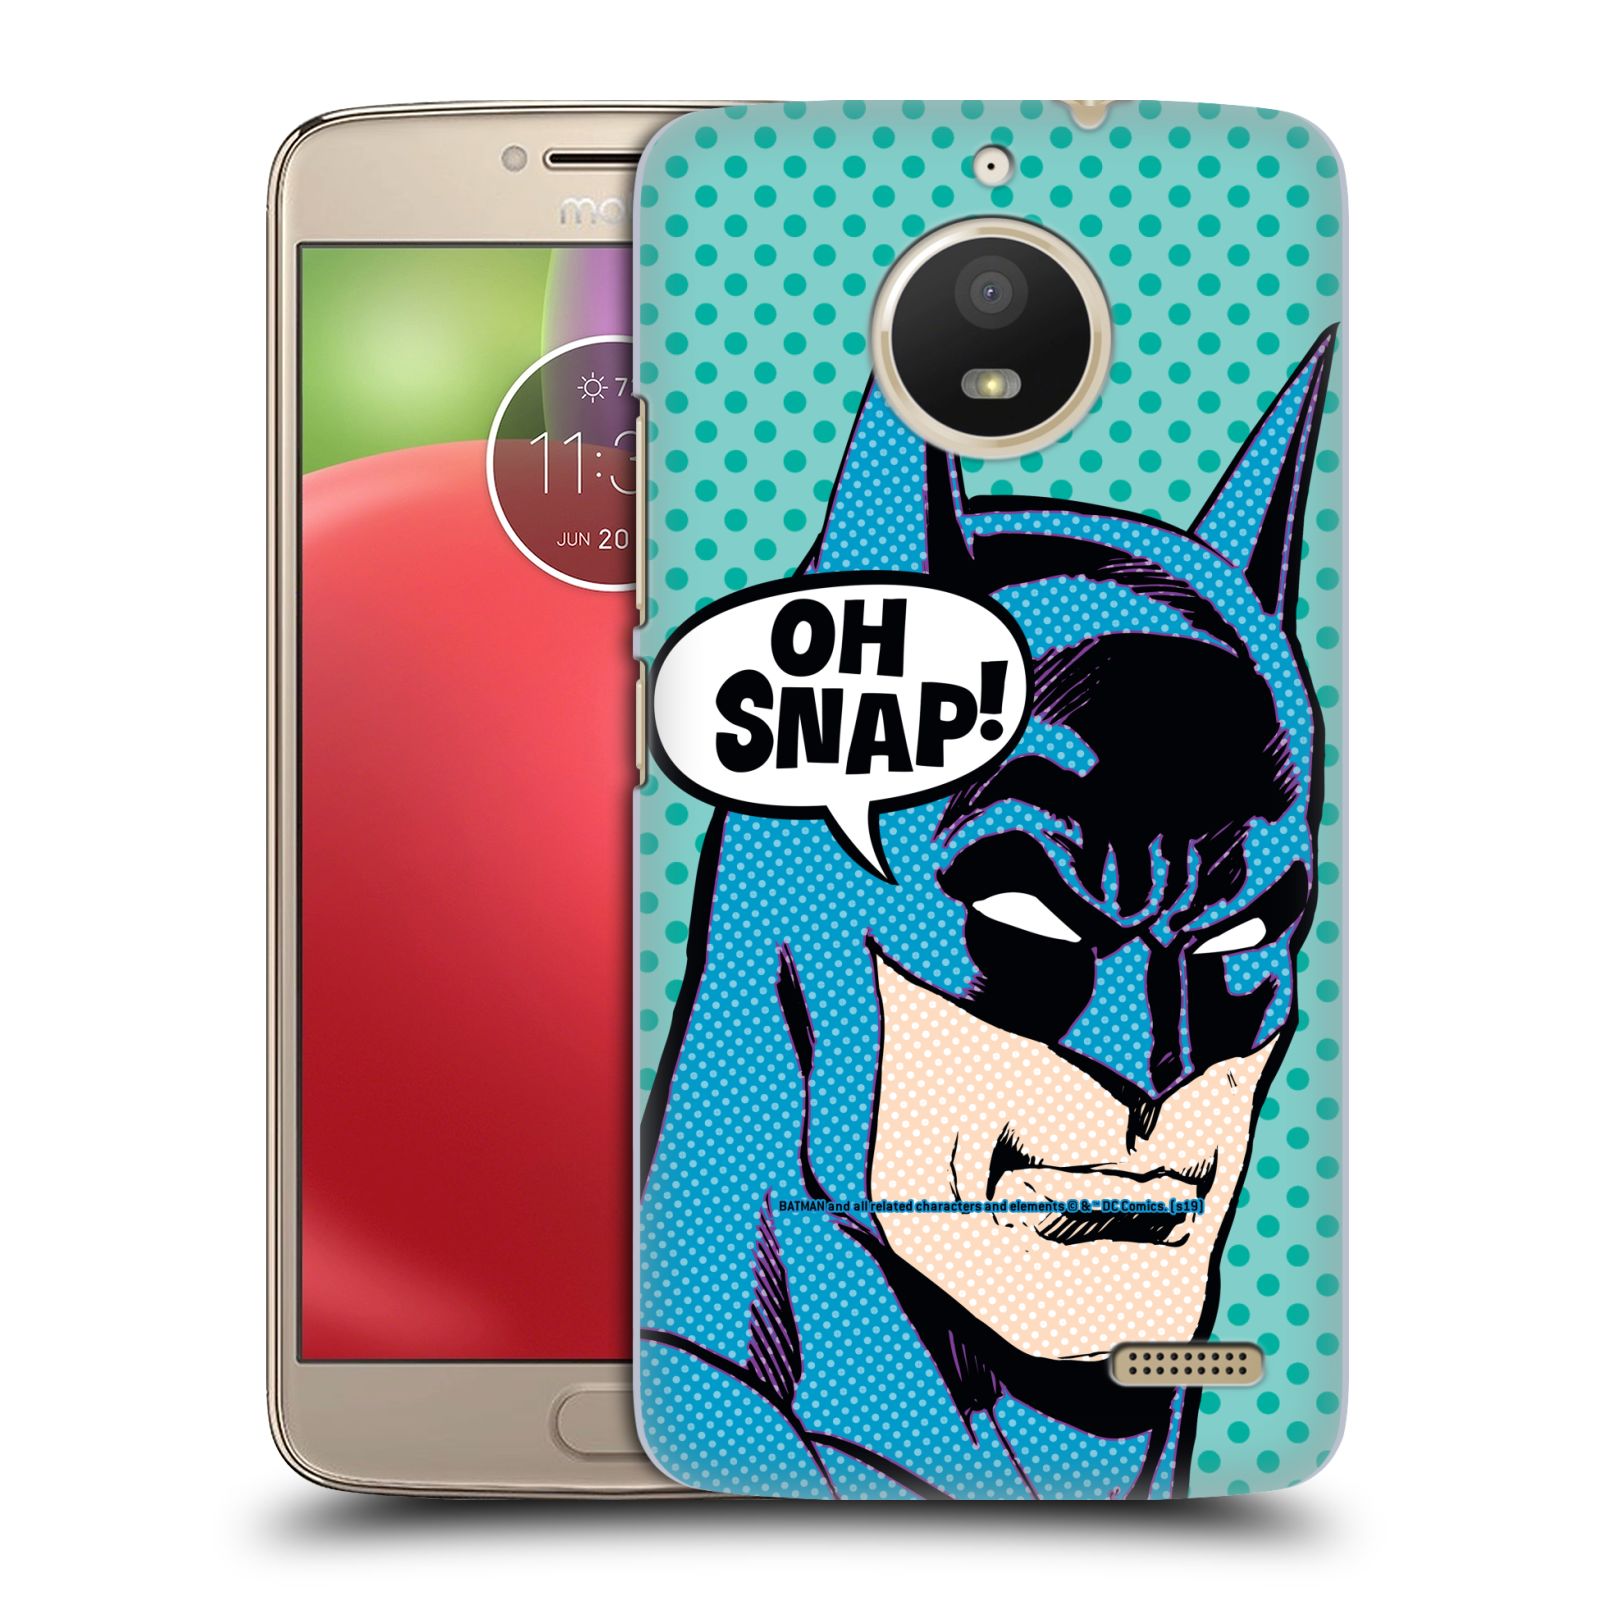 Pouzdro na mobil Lenovo Moto E4 - HEAD CASE - DC komix Batman Pop Art tvář